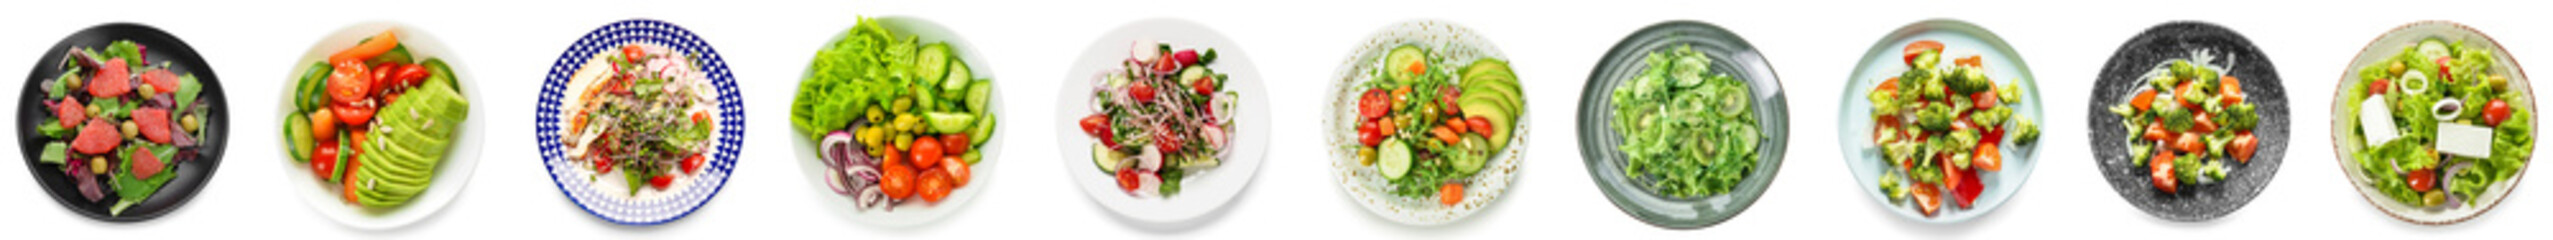 Ensemble de salades savoureuses avec des légumes sur fond blanc, vue de dessus